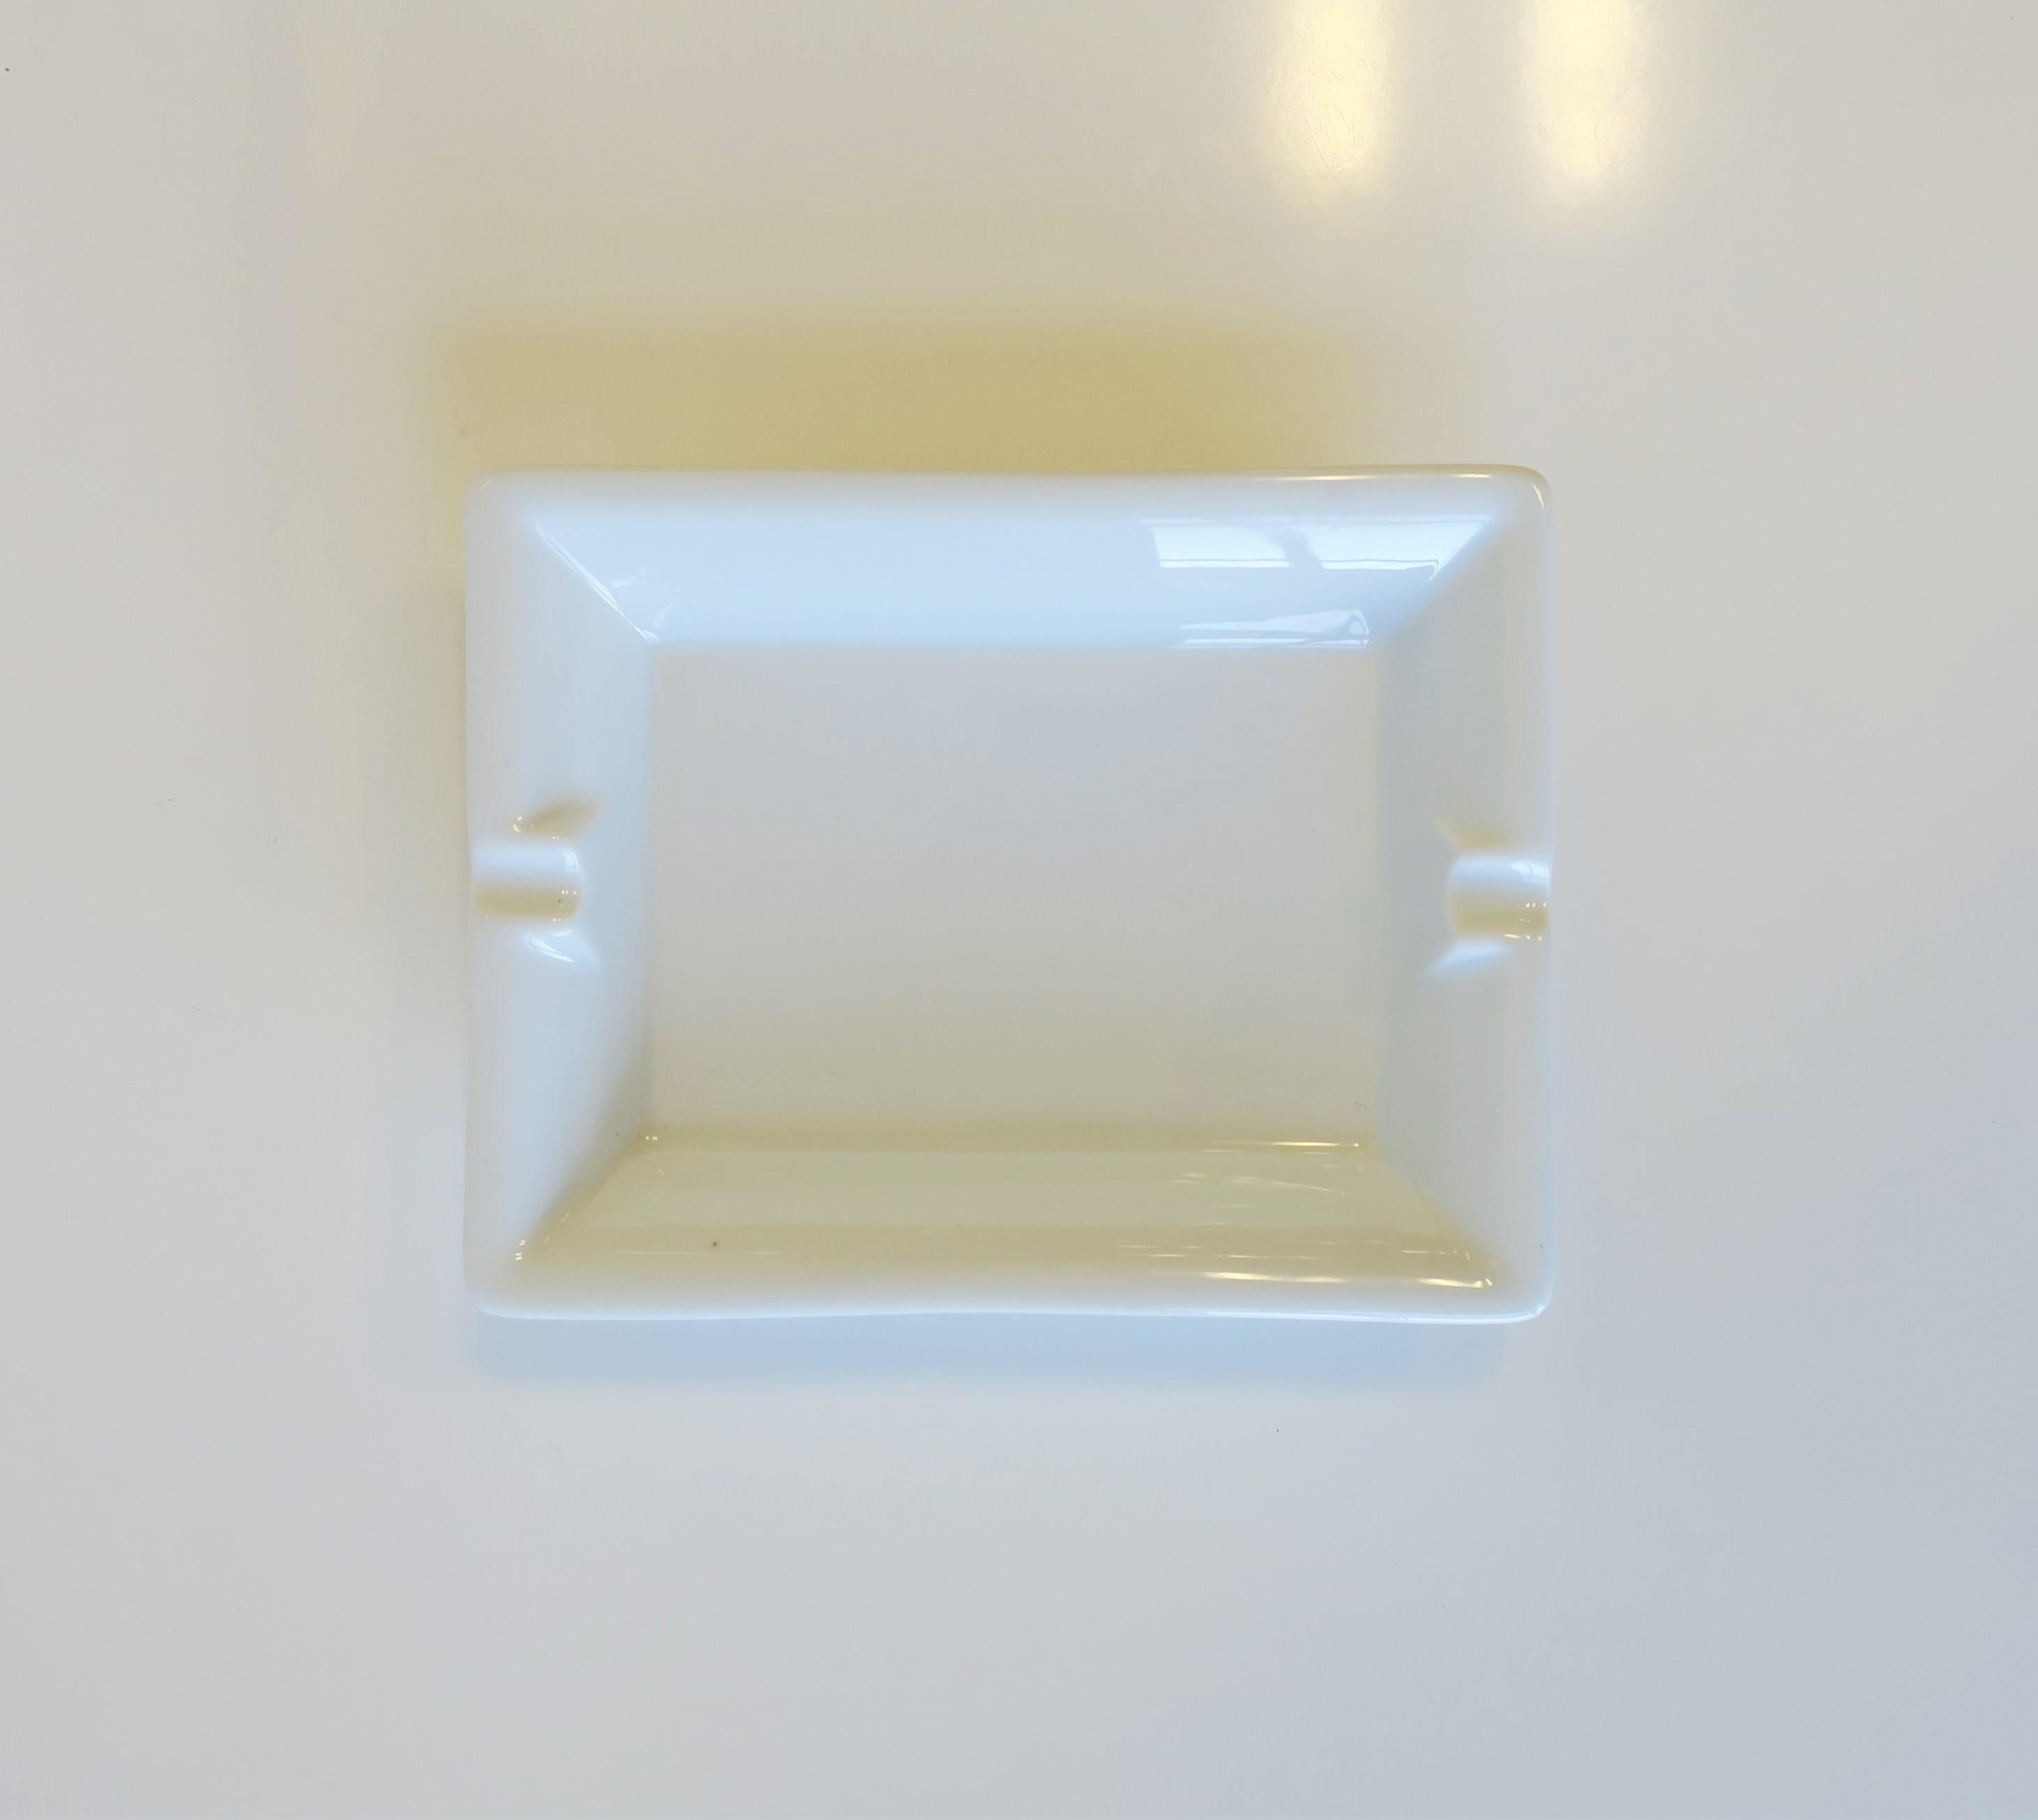 Französisches weißes Porzellantablett oder Aschenbecher, Mitte bis Ende des 20. Jahrhunderts, Frankreich. Ein großartiges Einzelstück oder Tablett zur Aufbewahrung von Schmuck (wie abgebildet) oder anderen Gegenständen auf Schreibtisch, Waschtisch,